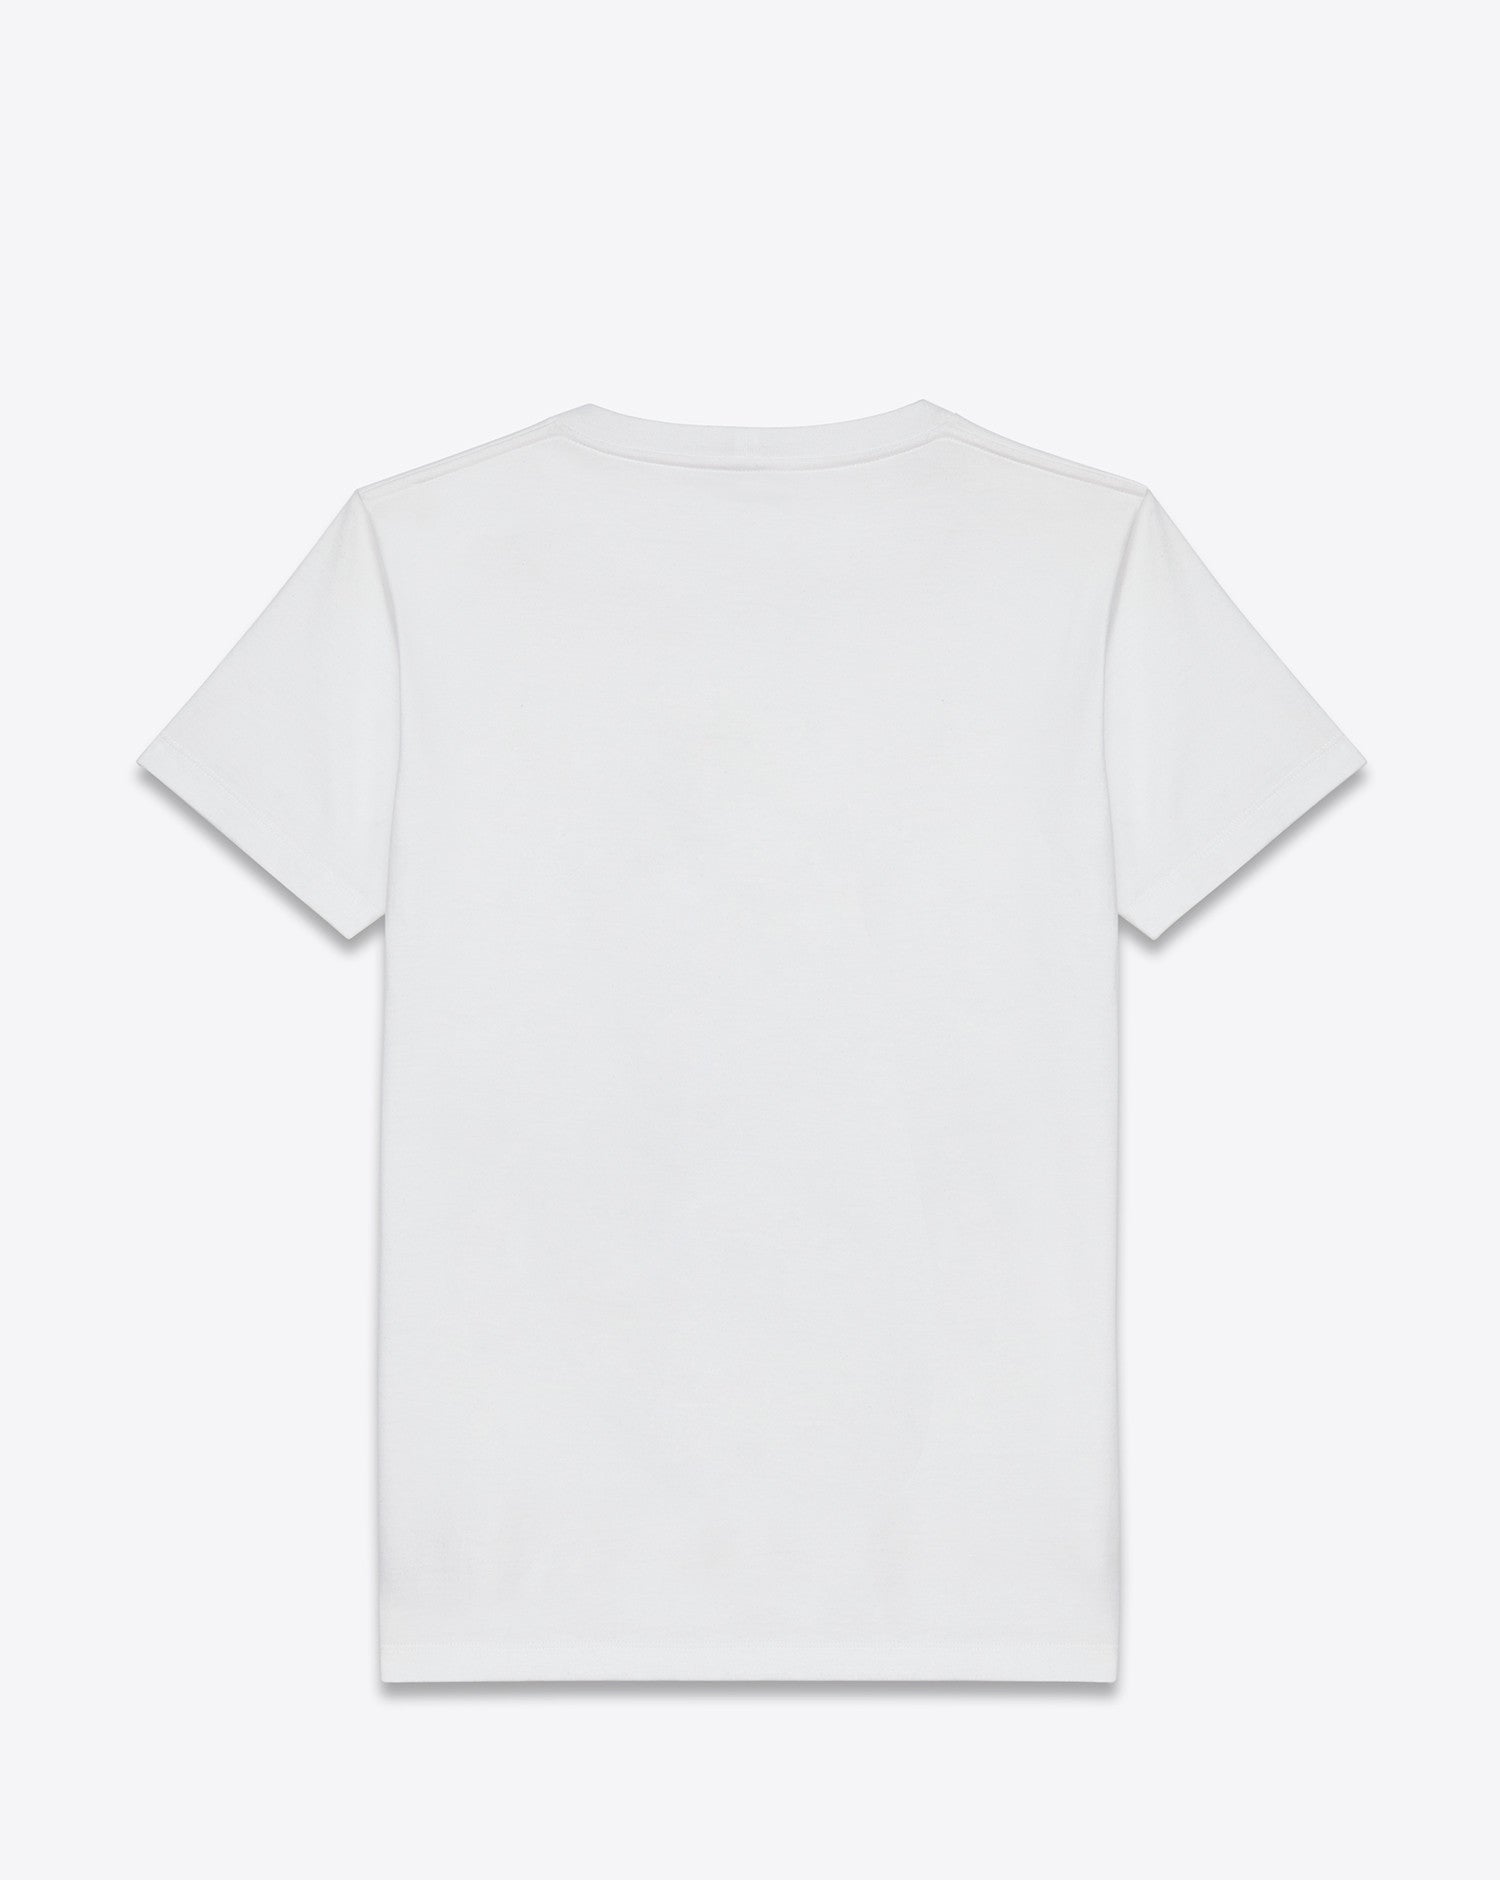 Dinosaur T-Shirt White - DEMEANOIR - 1